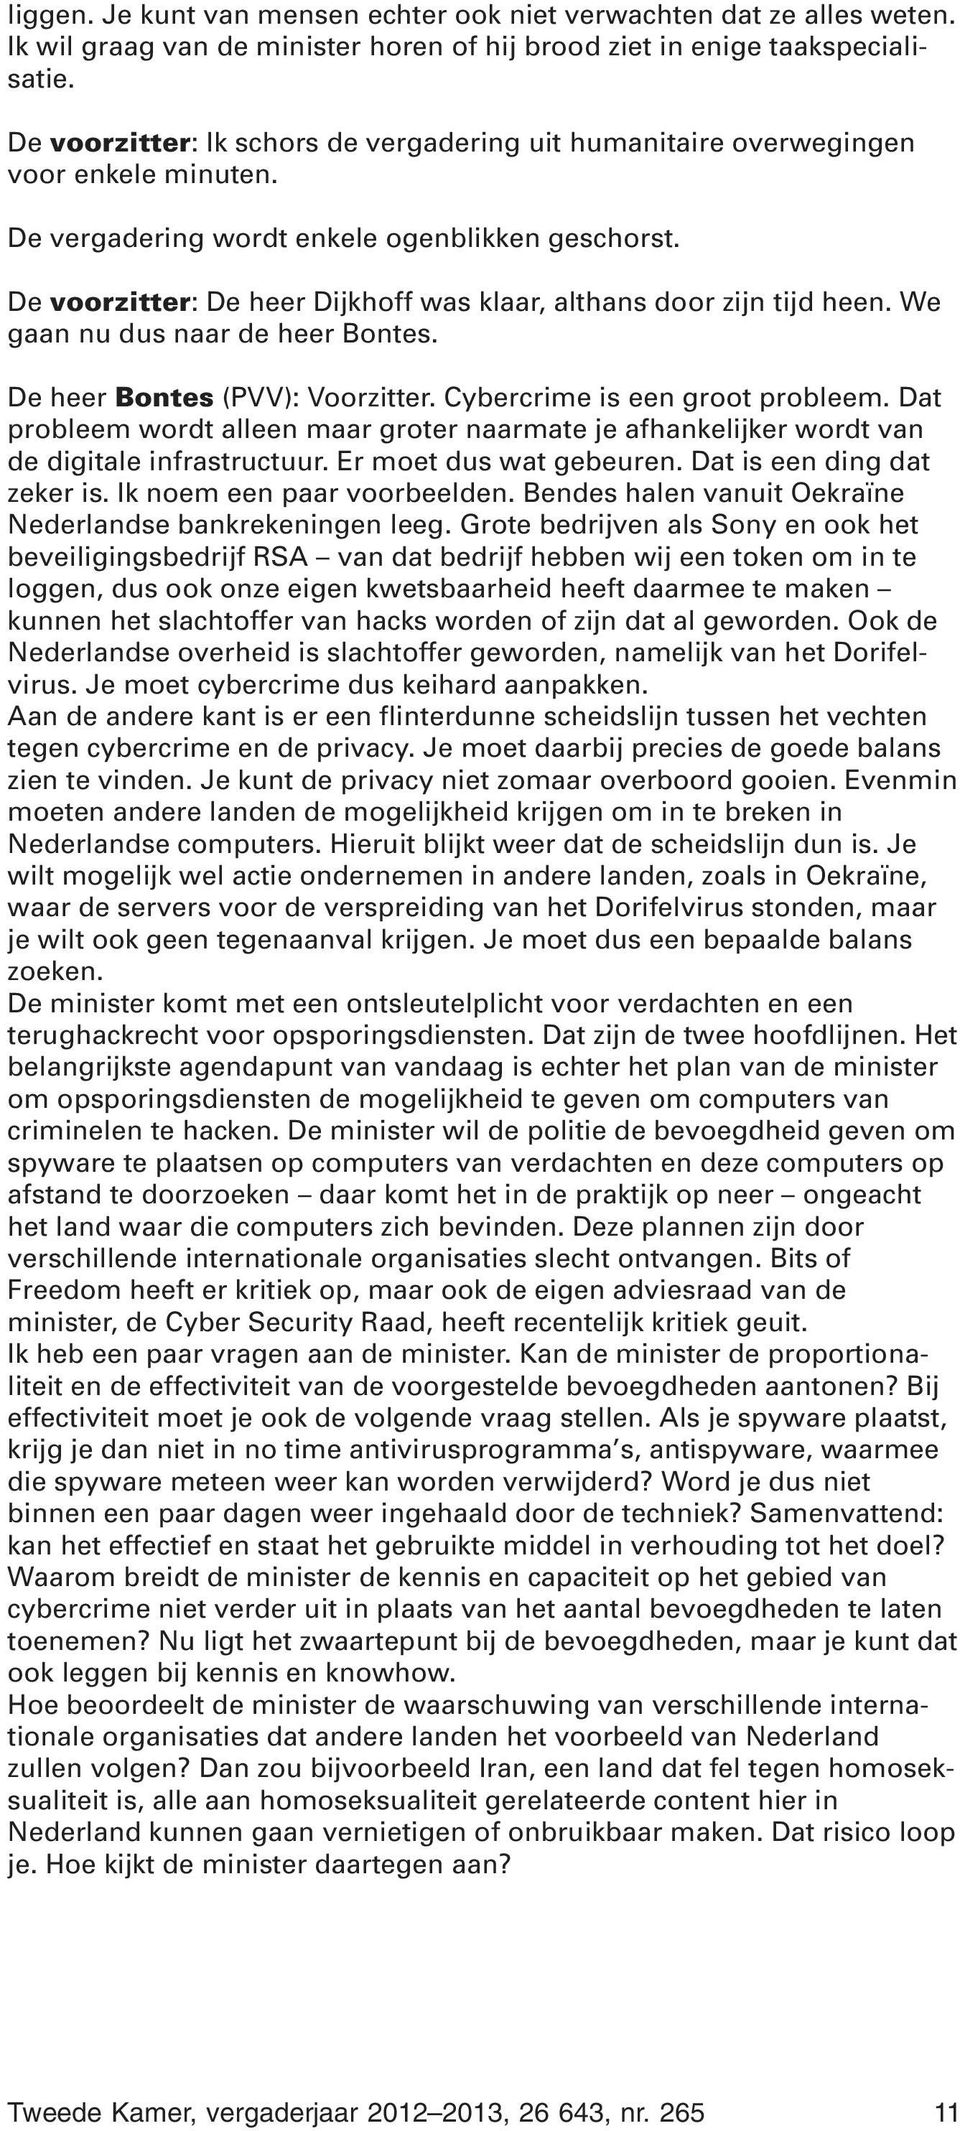 De voorzitter: De heer Dijkhoff was klaar, althans door zijn tijd heen. We gaan nu dus naar de heer Bontes. De heer Bontes (PVV): Voorzitter. Cybercrime is een groot probleem.